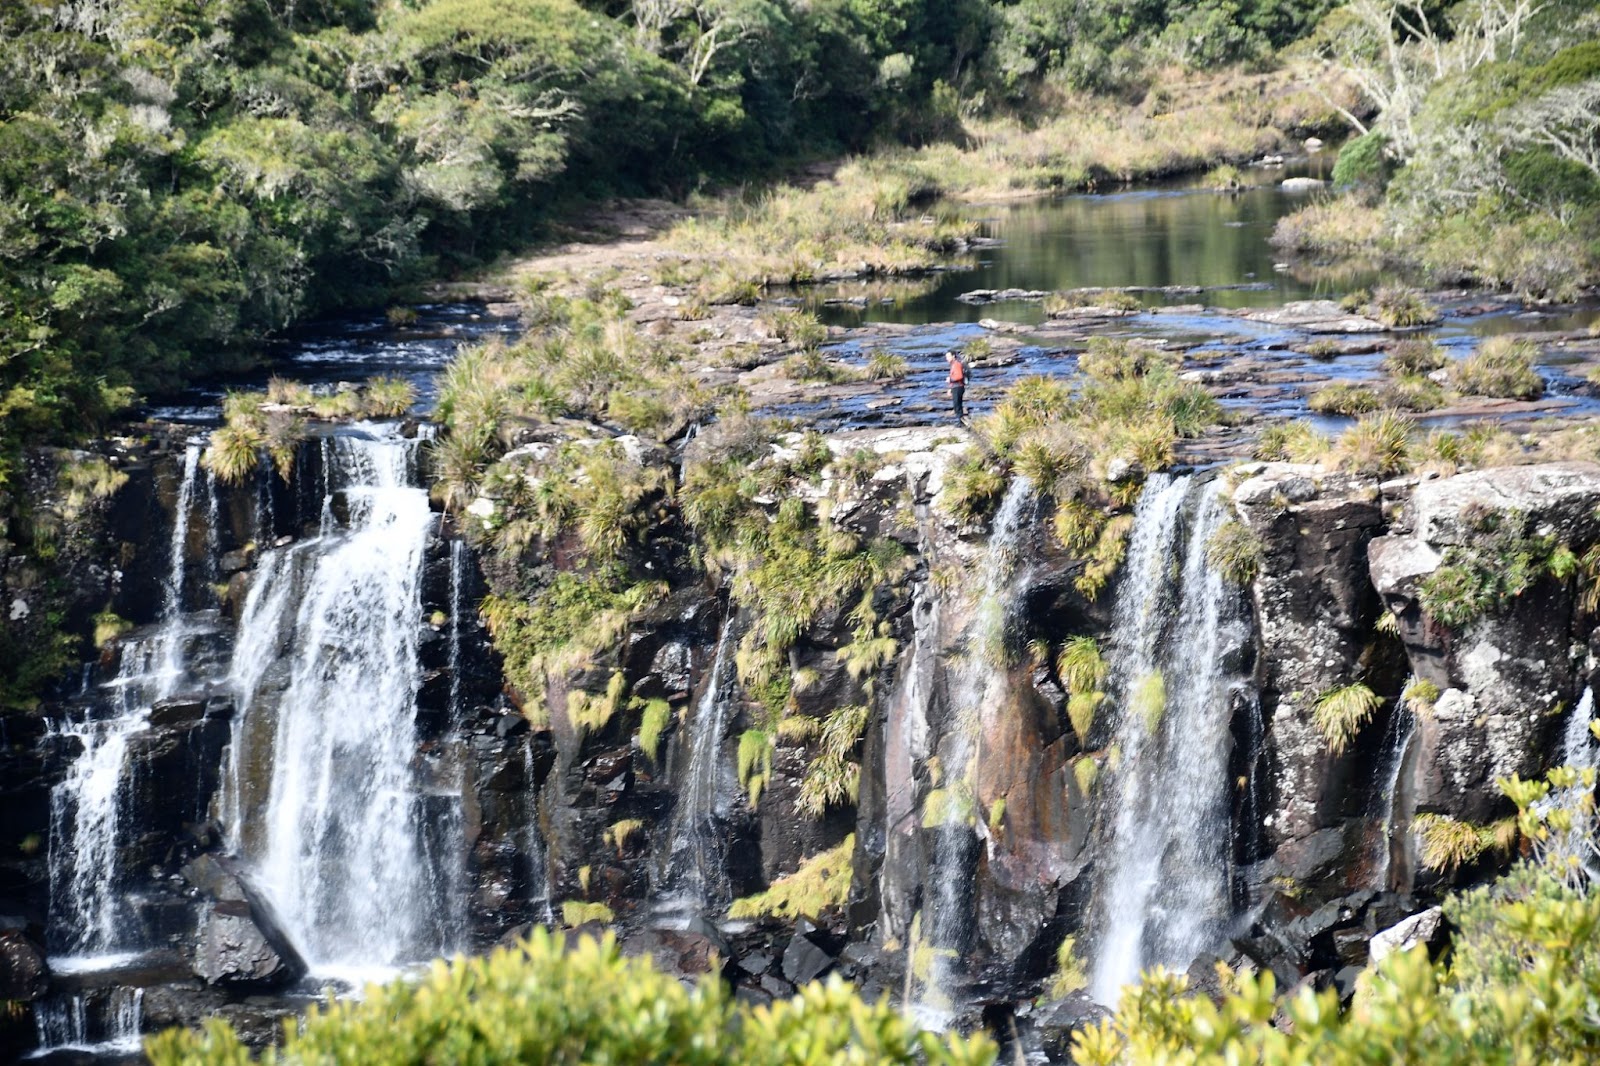 Cachoeira no Parque Nacional de Aparados da Serra. A queda d’água é formada por pedras escuras e está rodeada pela Mata Atlântica